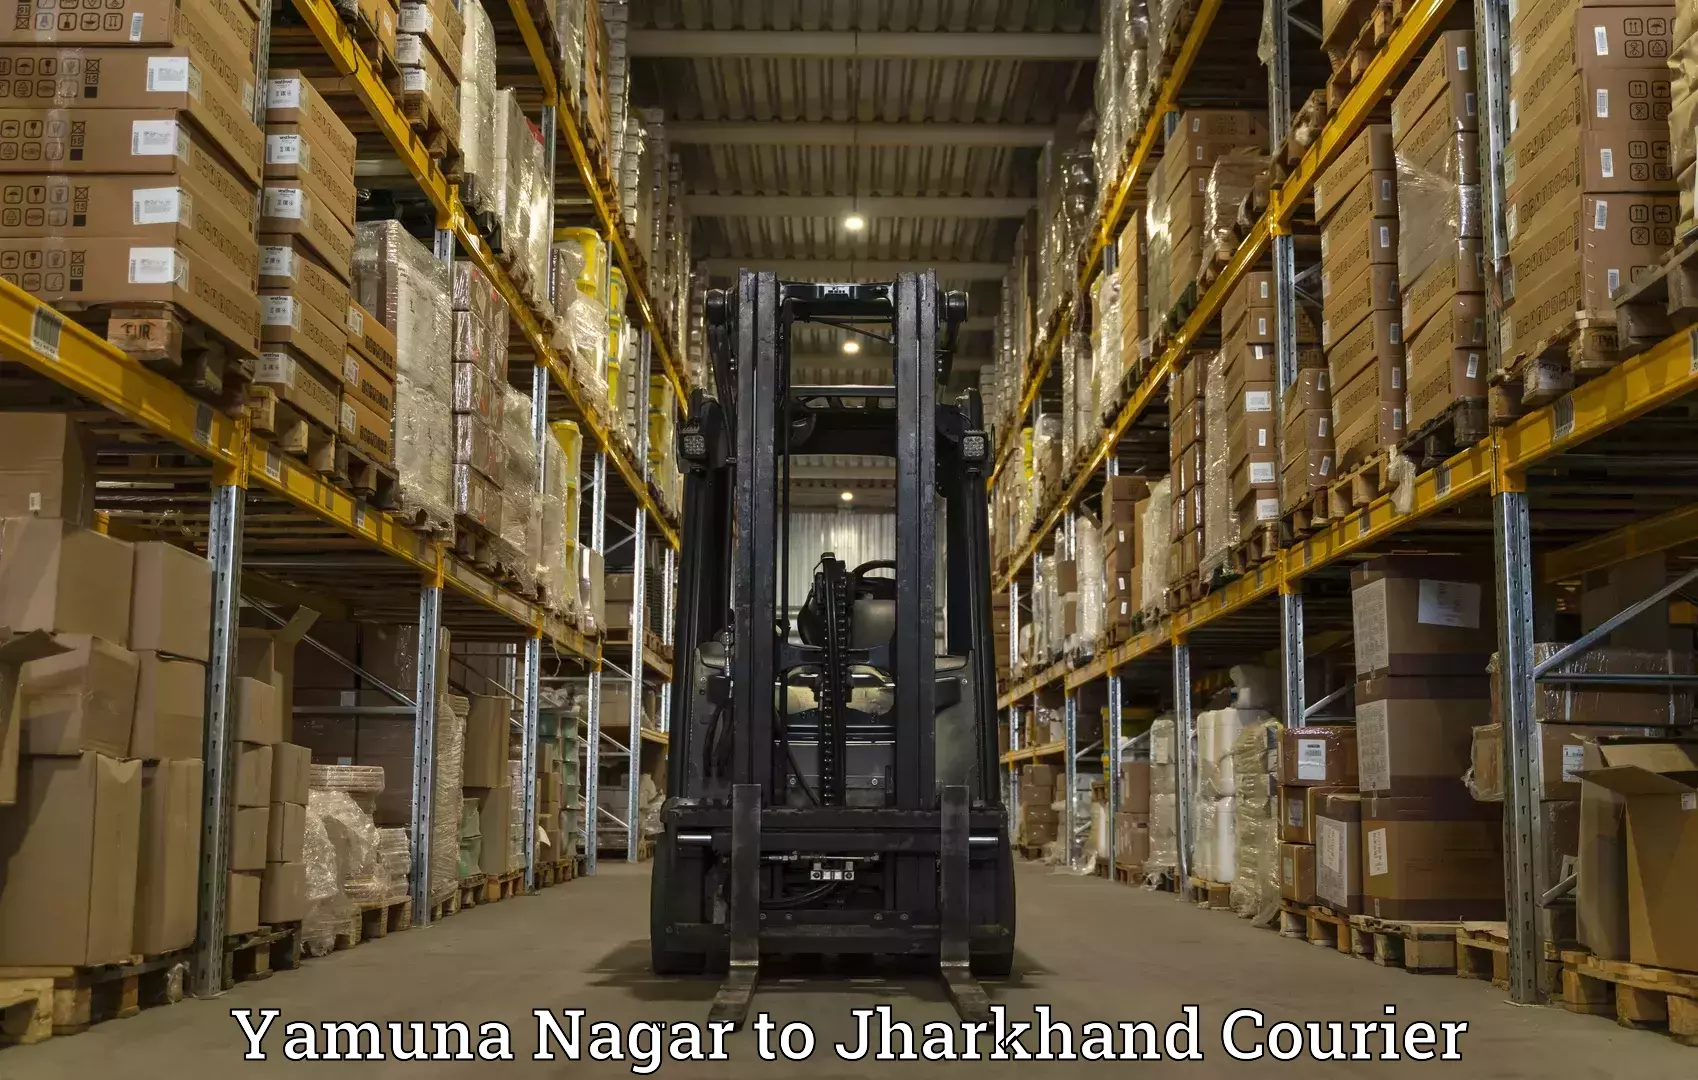 Ocean freight courier Yamuna Nagar to Jharkhand